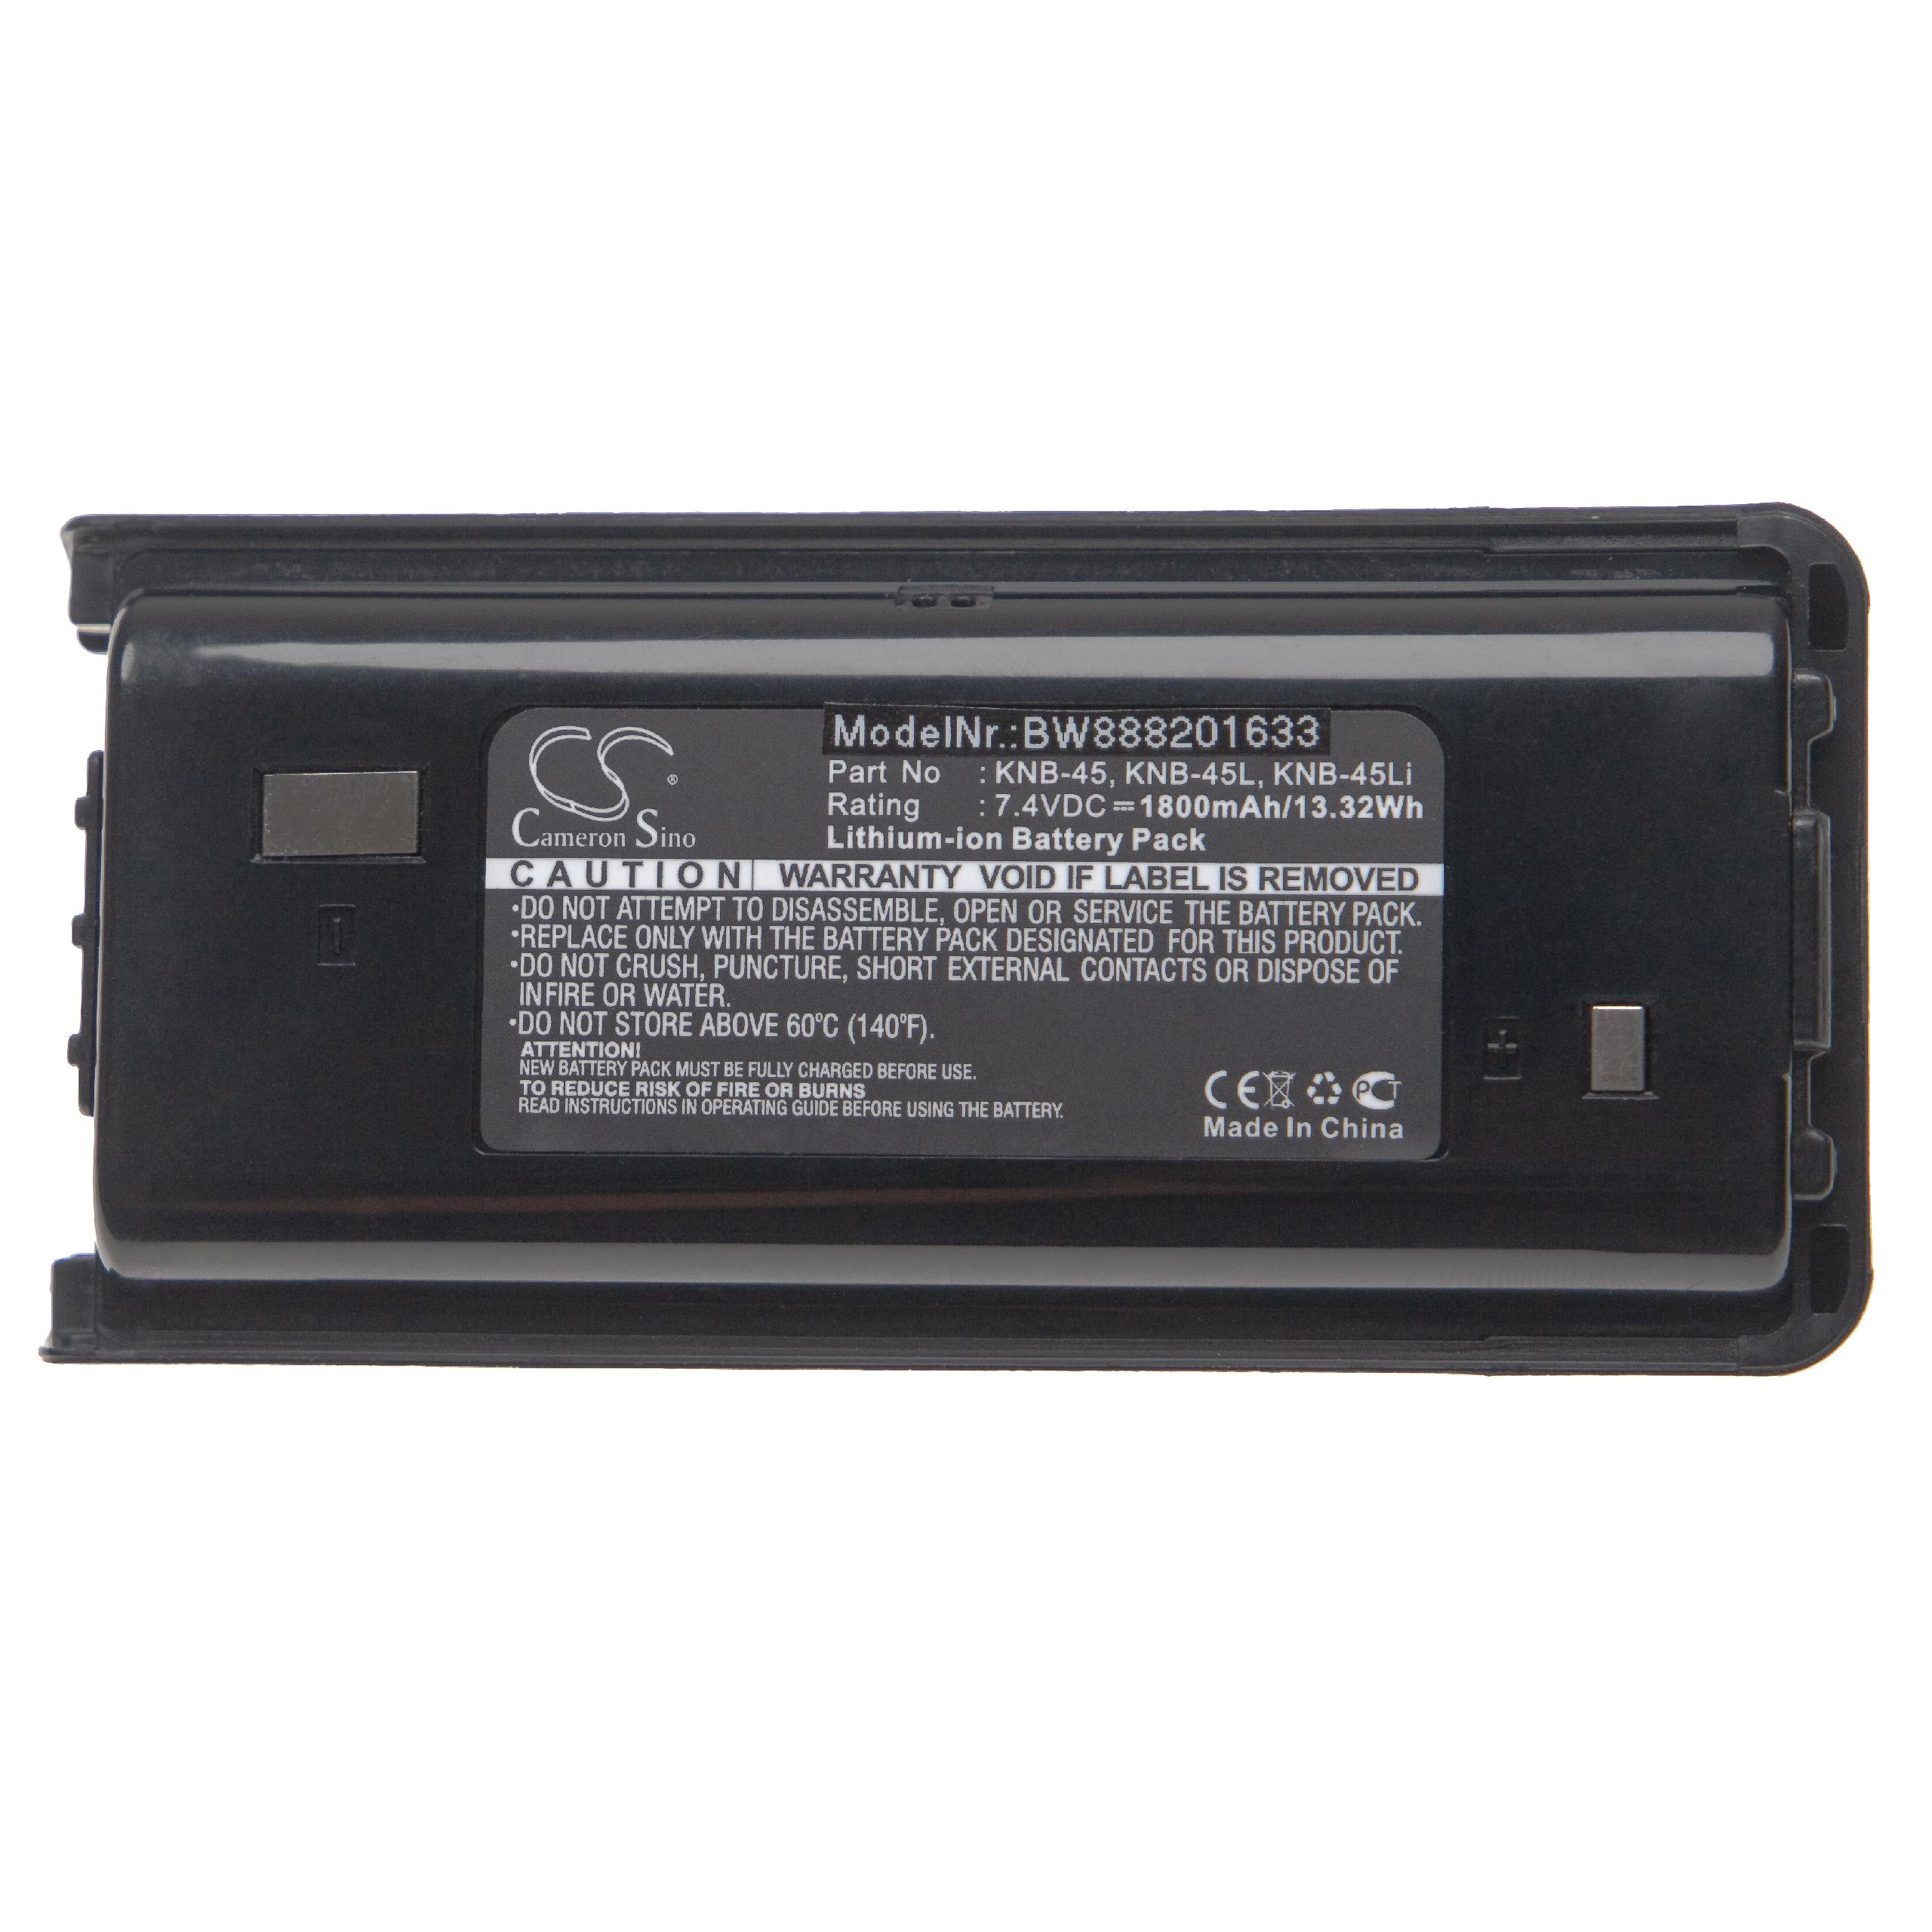 Batterie remplace Kenwood KNB-45L, KNB-45Li, KNB-45 pour radio talkie-walkie - 1800mAh 7,4V Li-ion